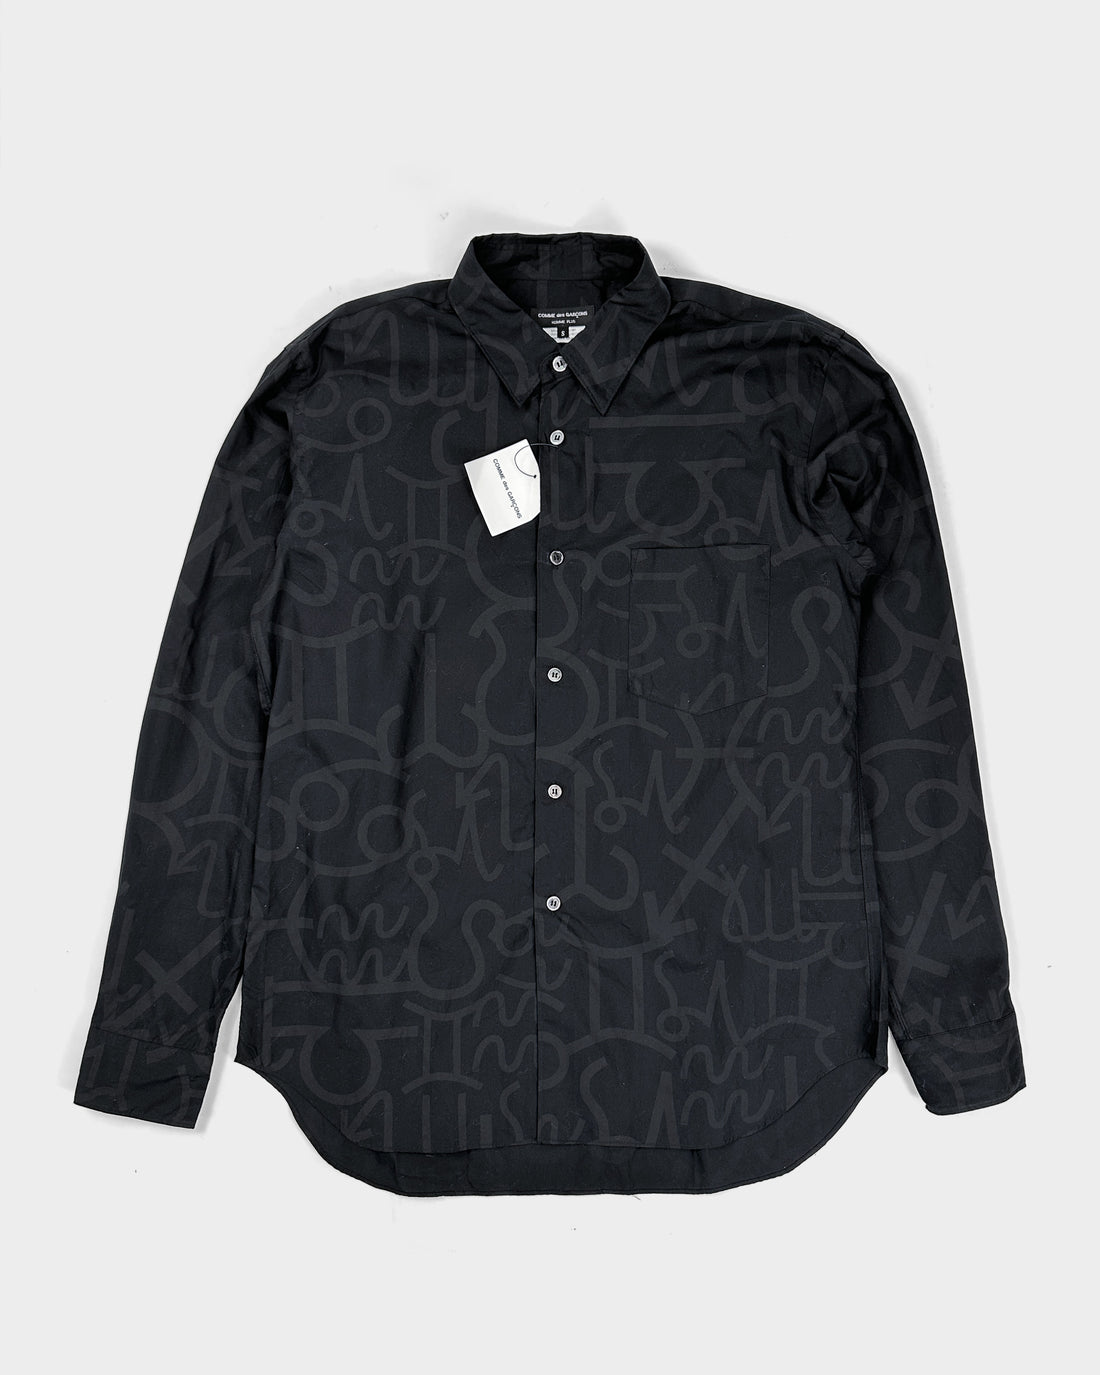 Comme des Garçons Homme Plus Black Printed Shirt 2012